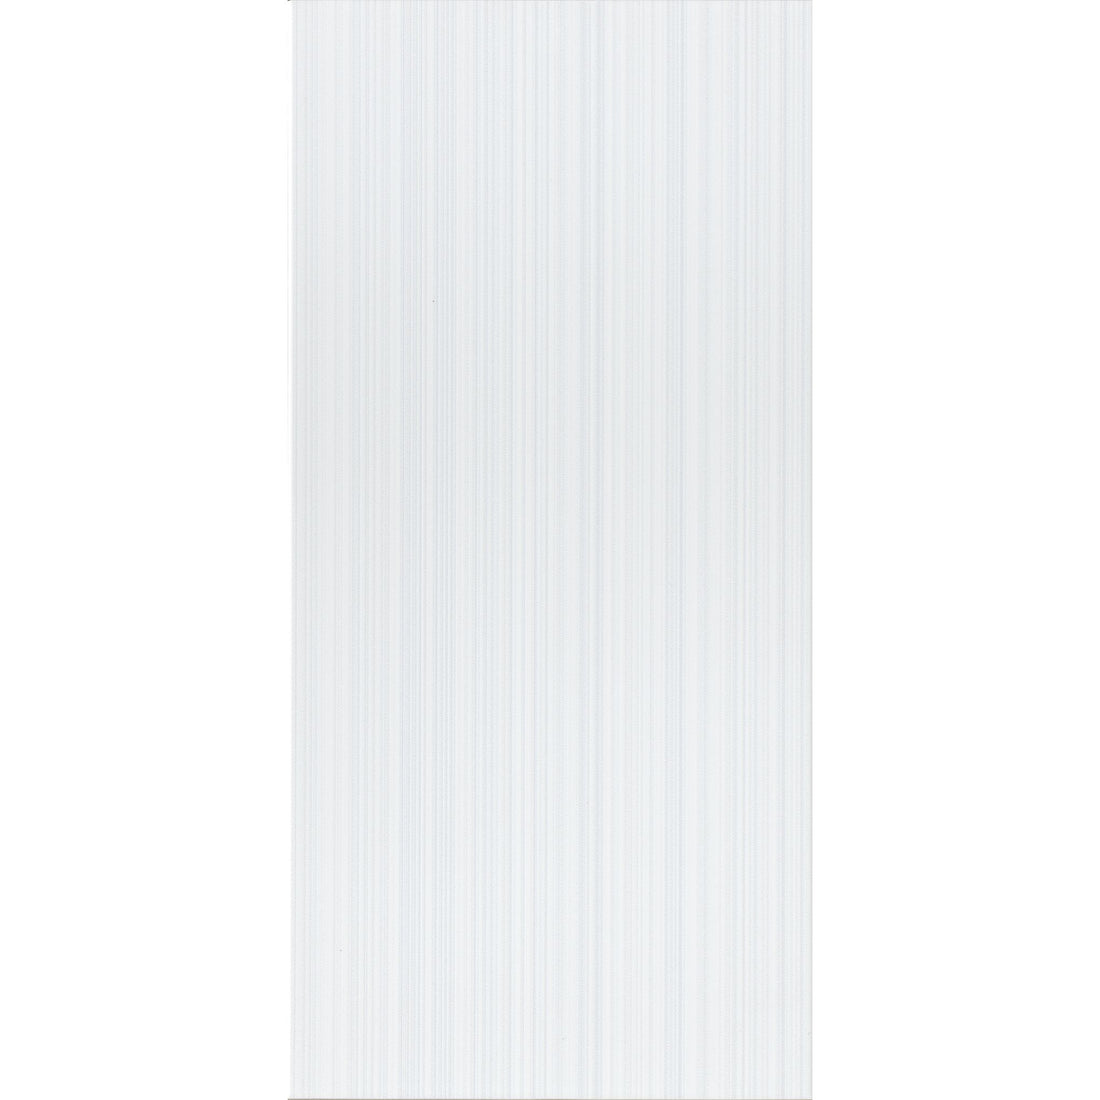 Brixton Wall Tile (Grey or White) - 25 x 50cm